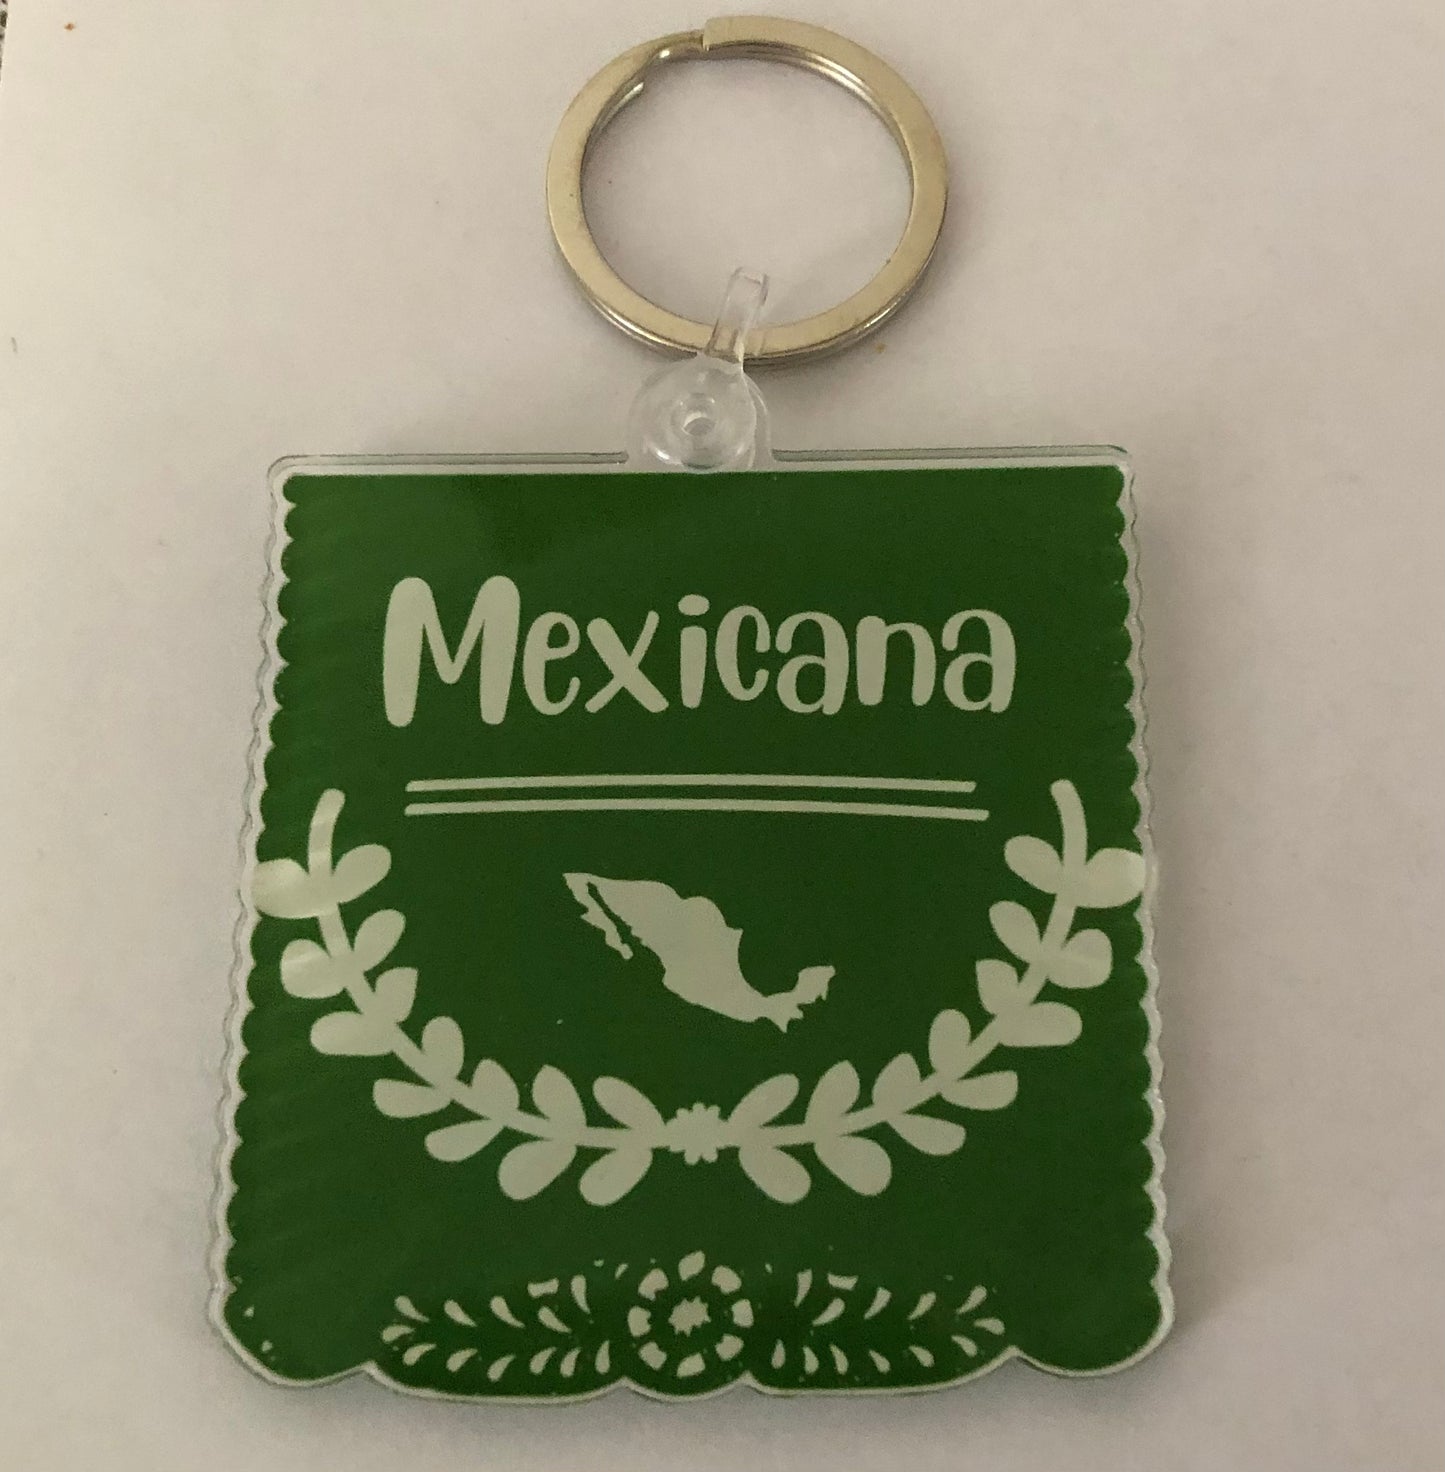 Mexicana keychain